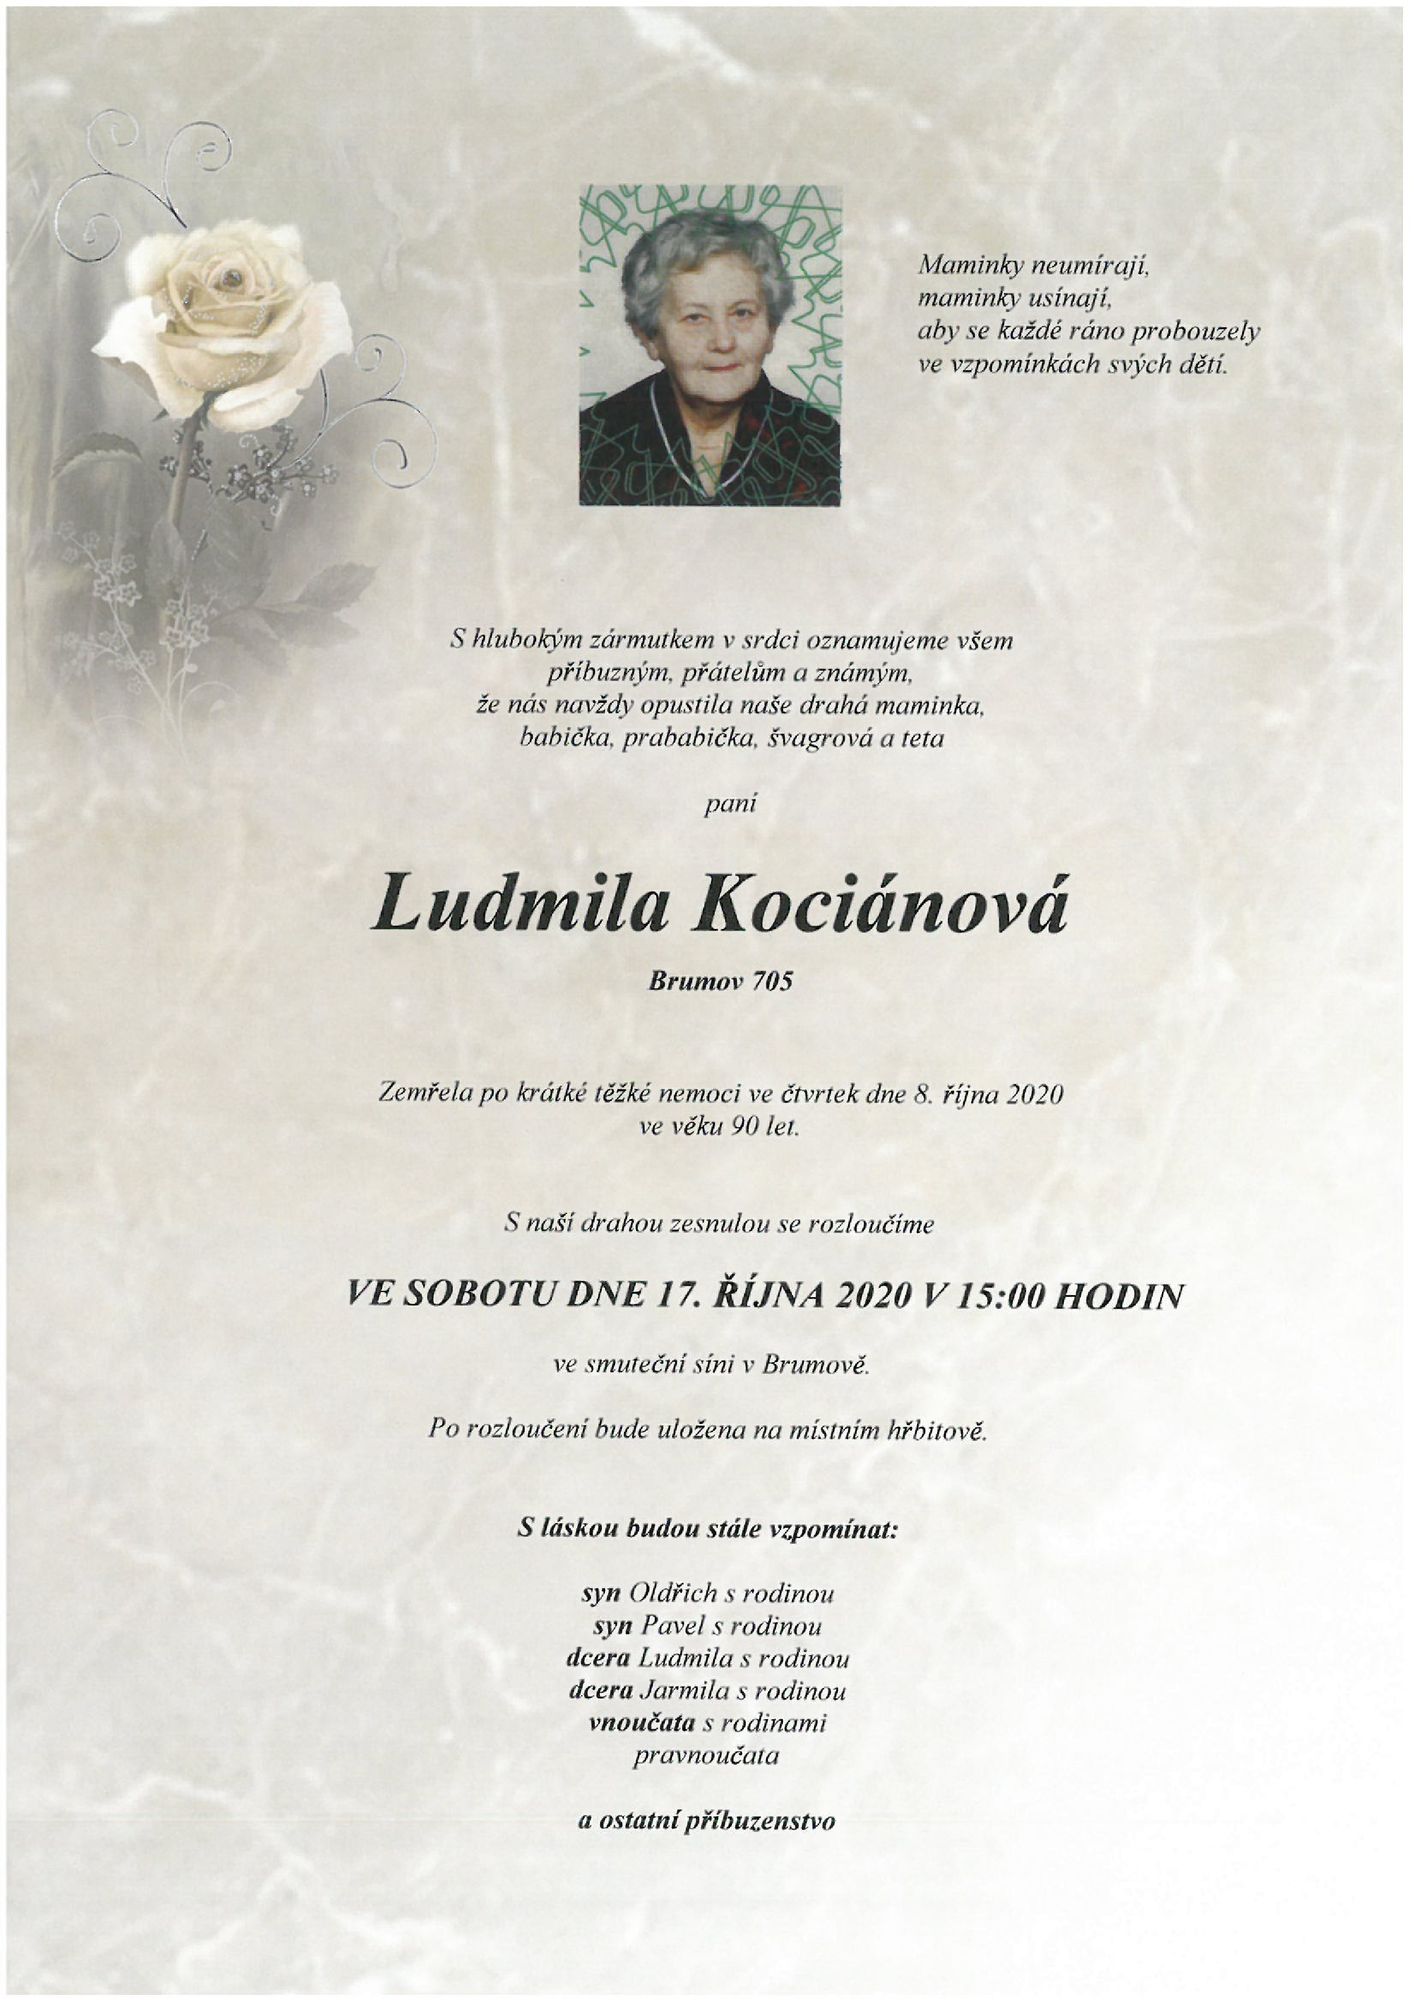 Ludmila Kociánová